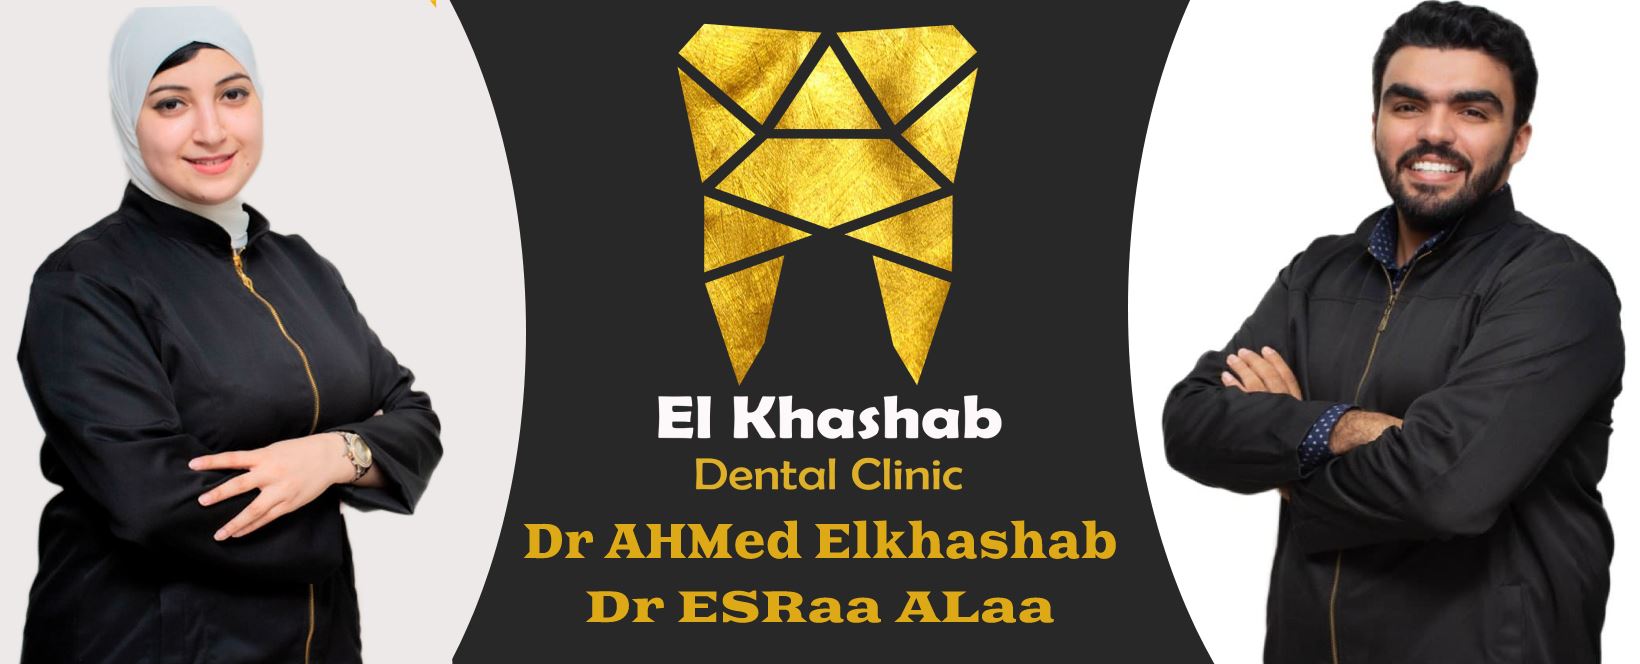 غلاف د أحمد الخشاب - Khashab Dental Clinic